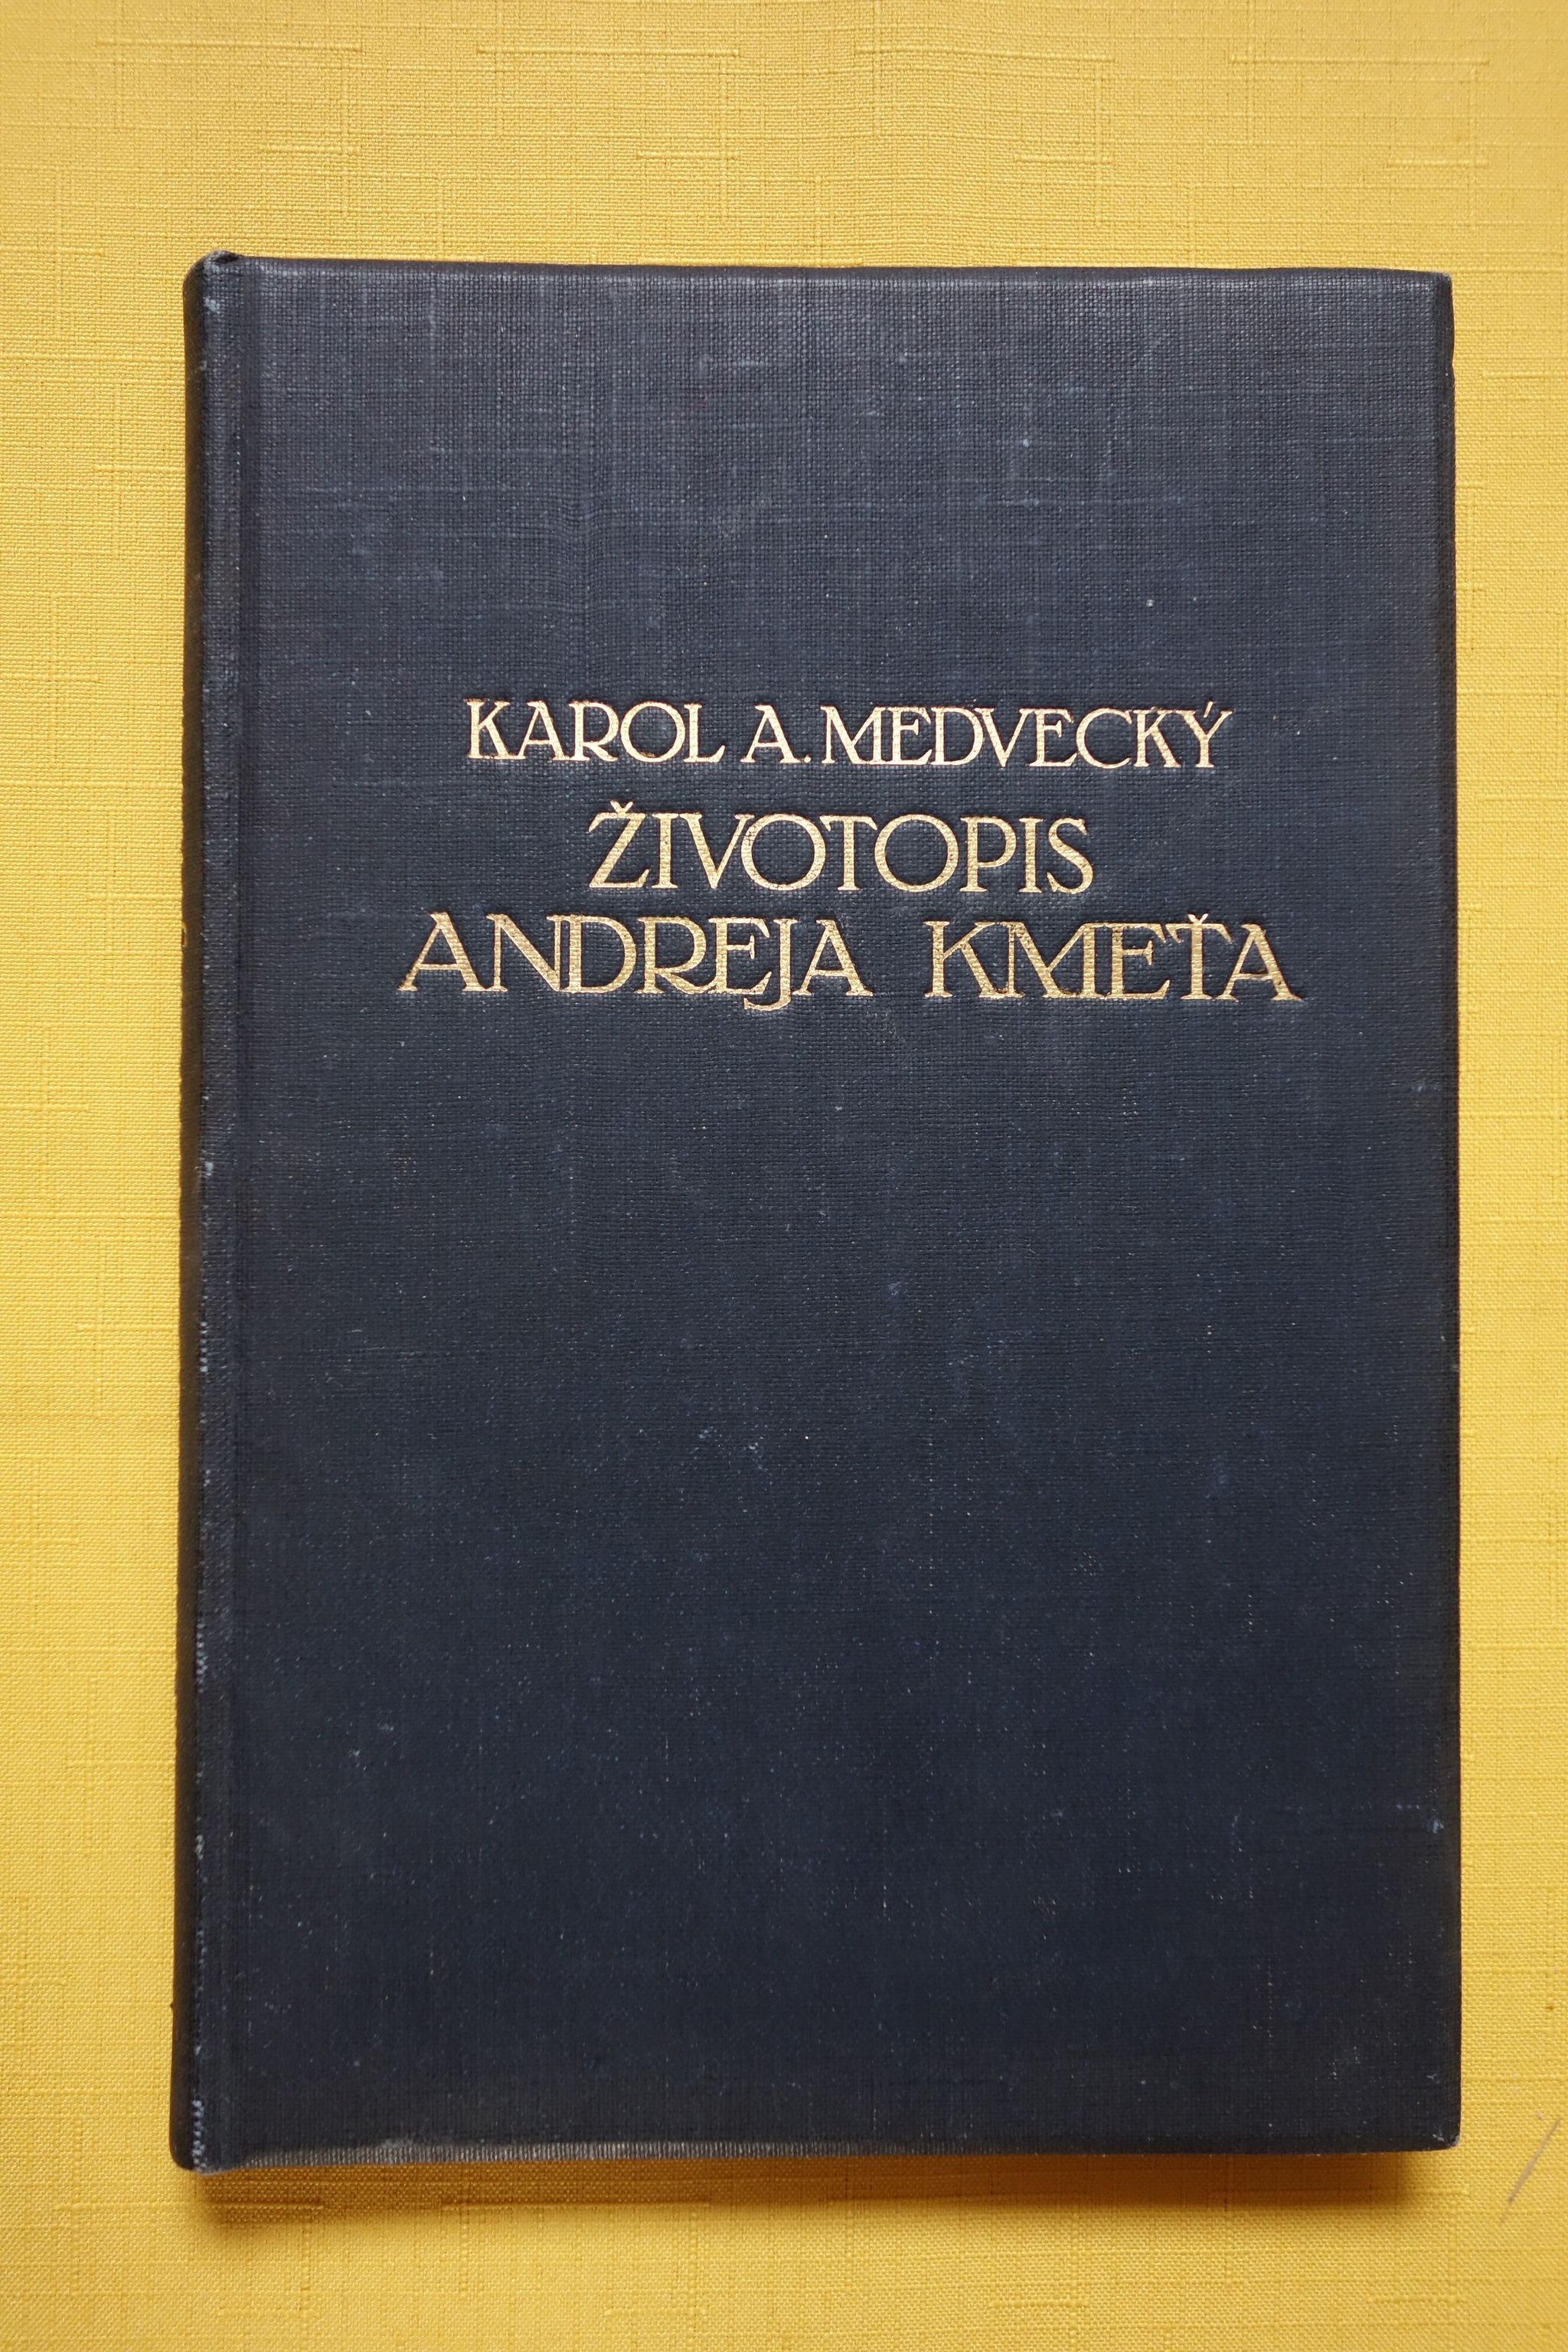 kniha "Životopis Andreja Kmeťa"